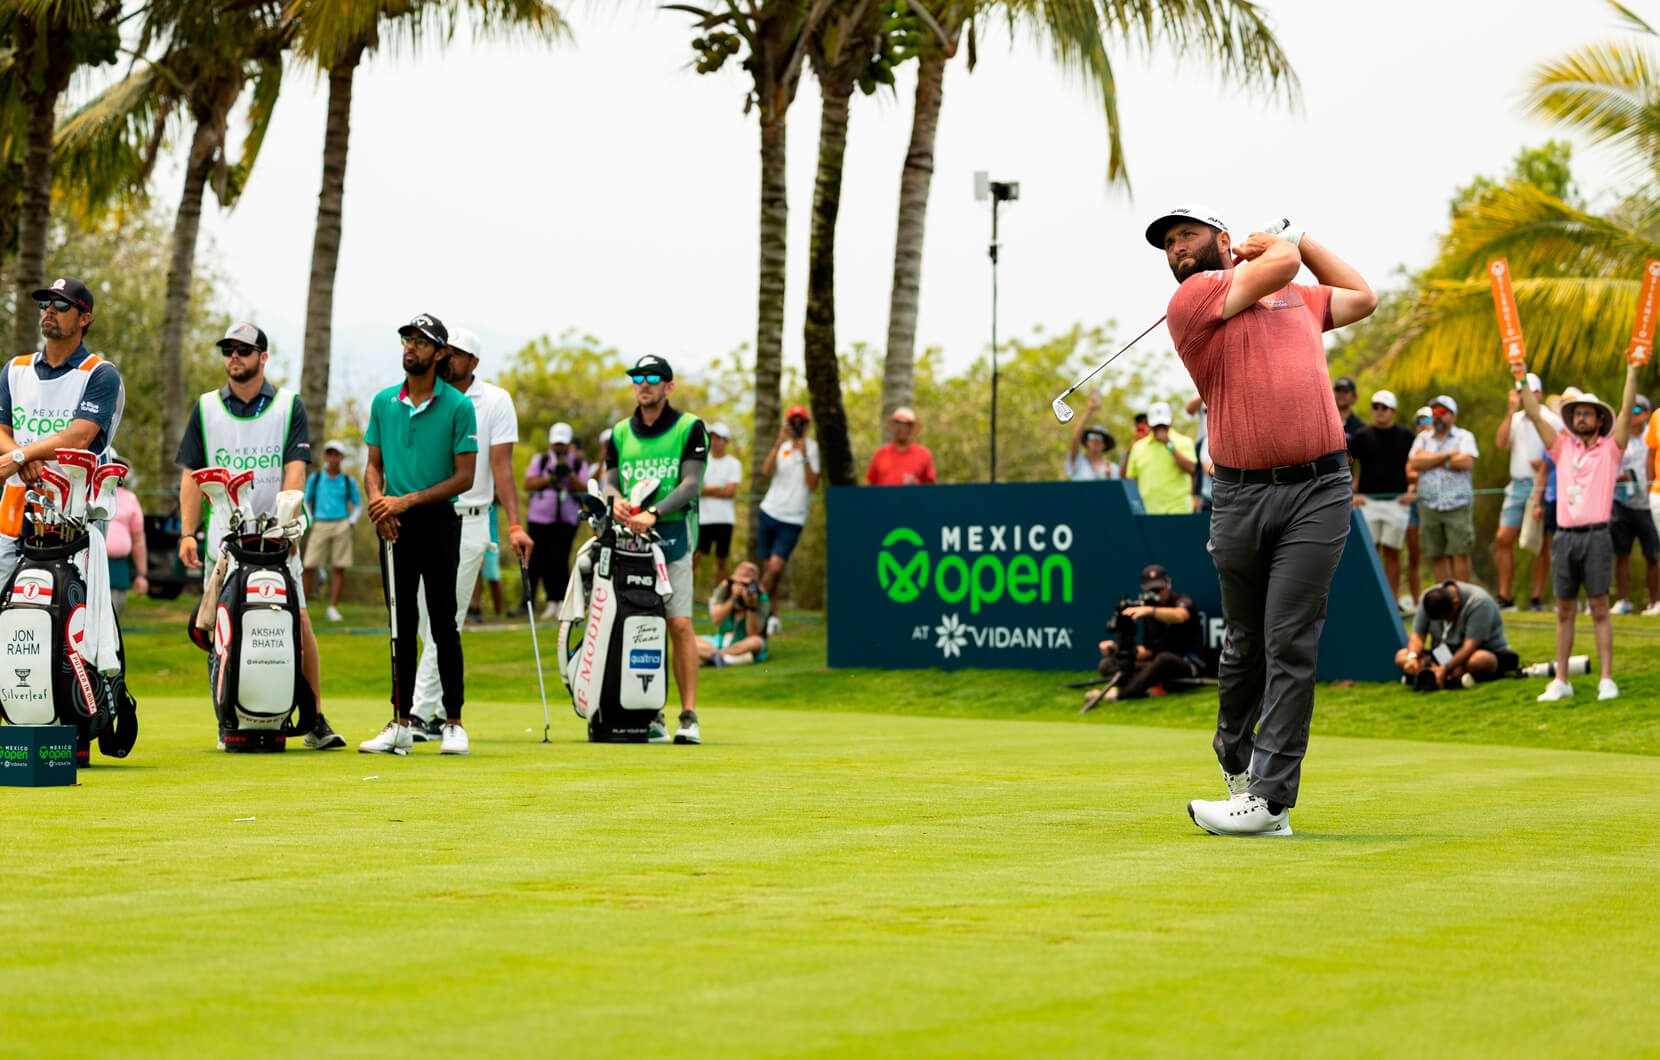 2022 Mexico Open at Vidanta Recap - Plugged In Golf